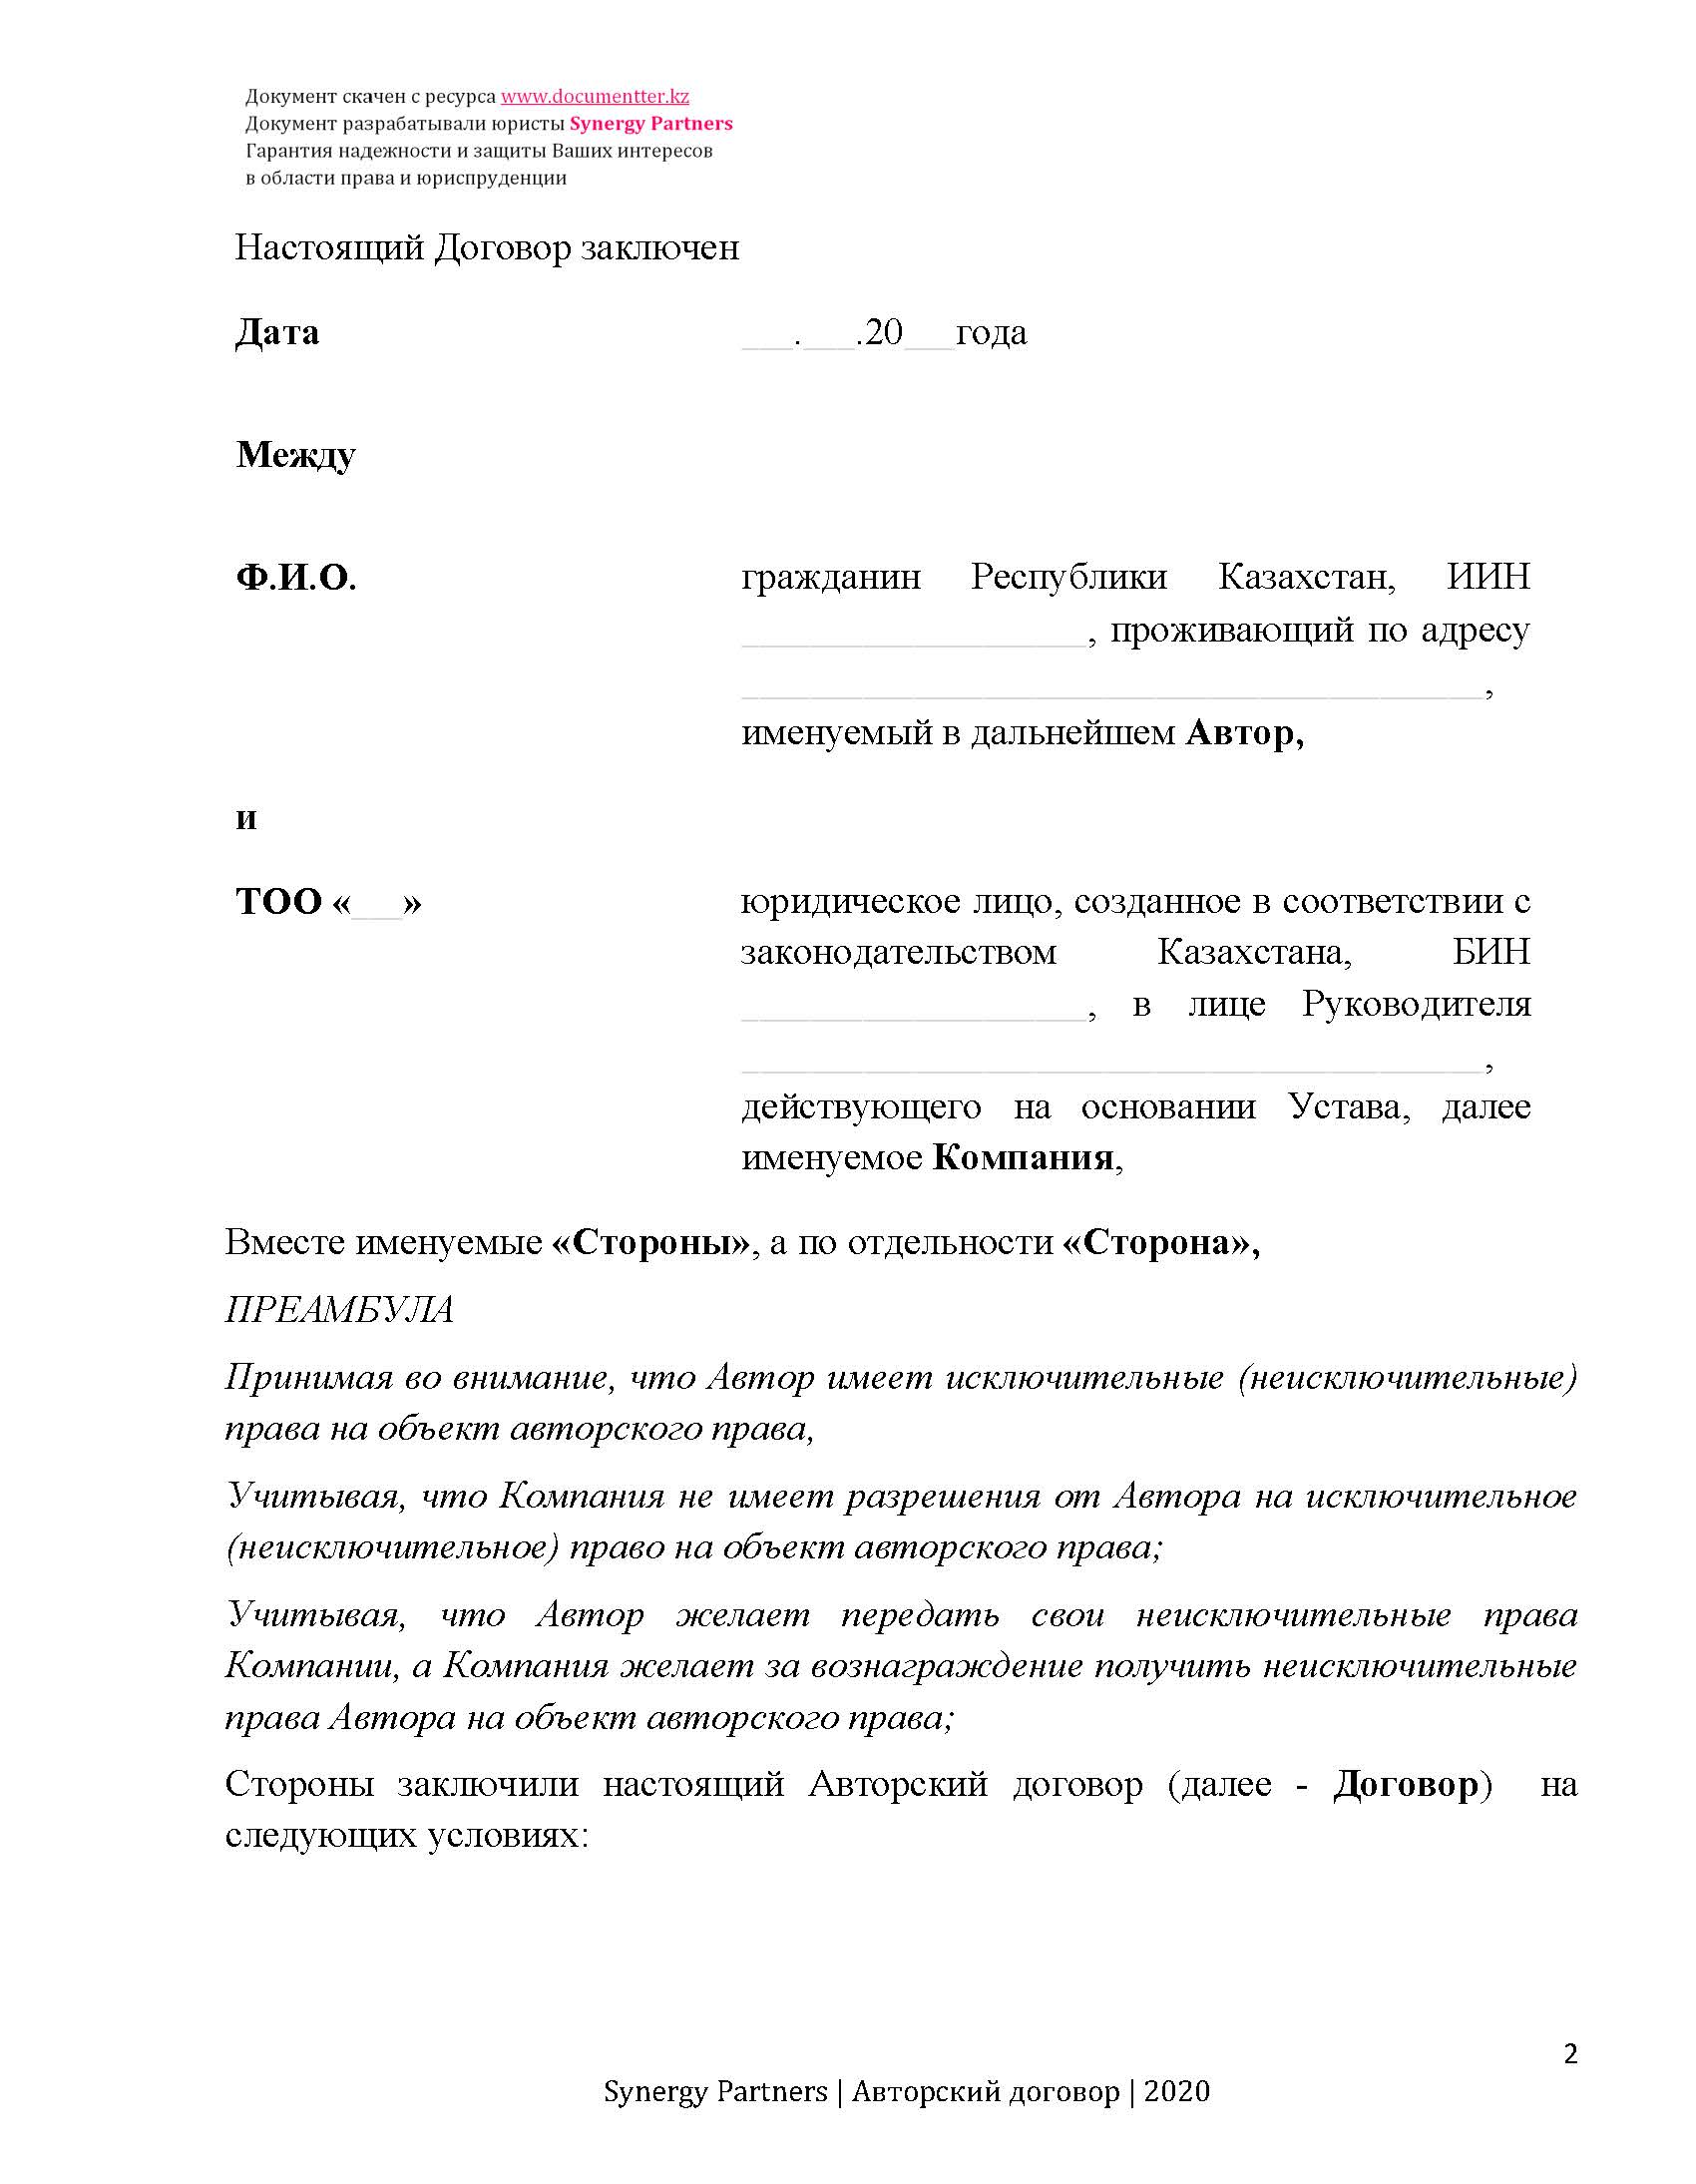 Универсальное соглашение на неисключительное использование объекта авторских прав (Авторский договор) | documentterkz.com в Казахстане